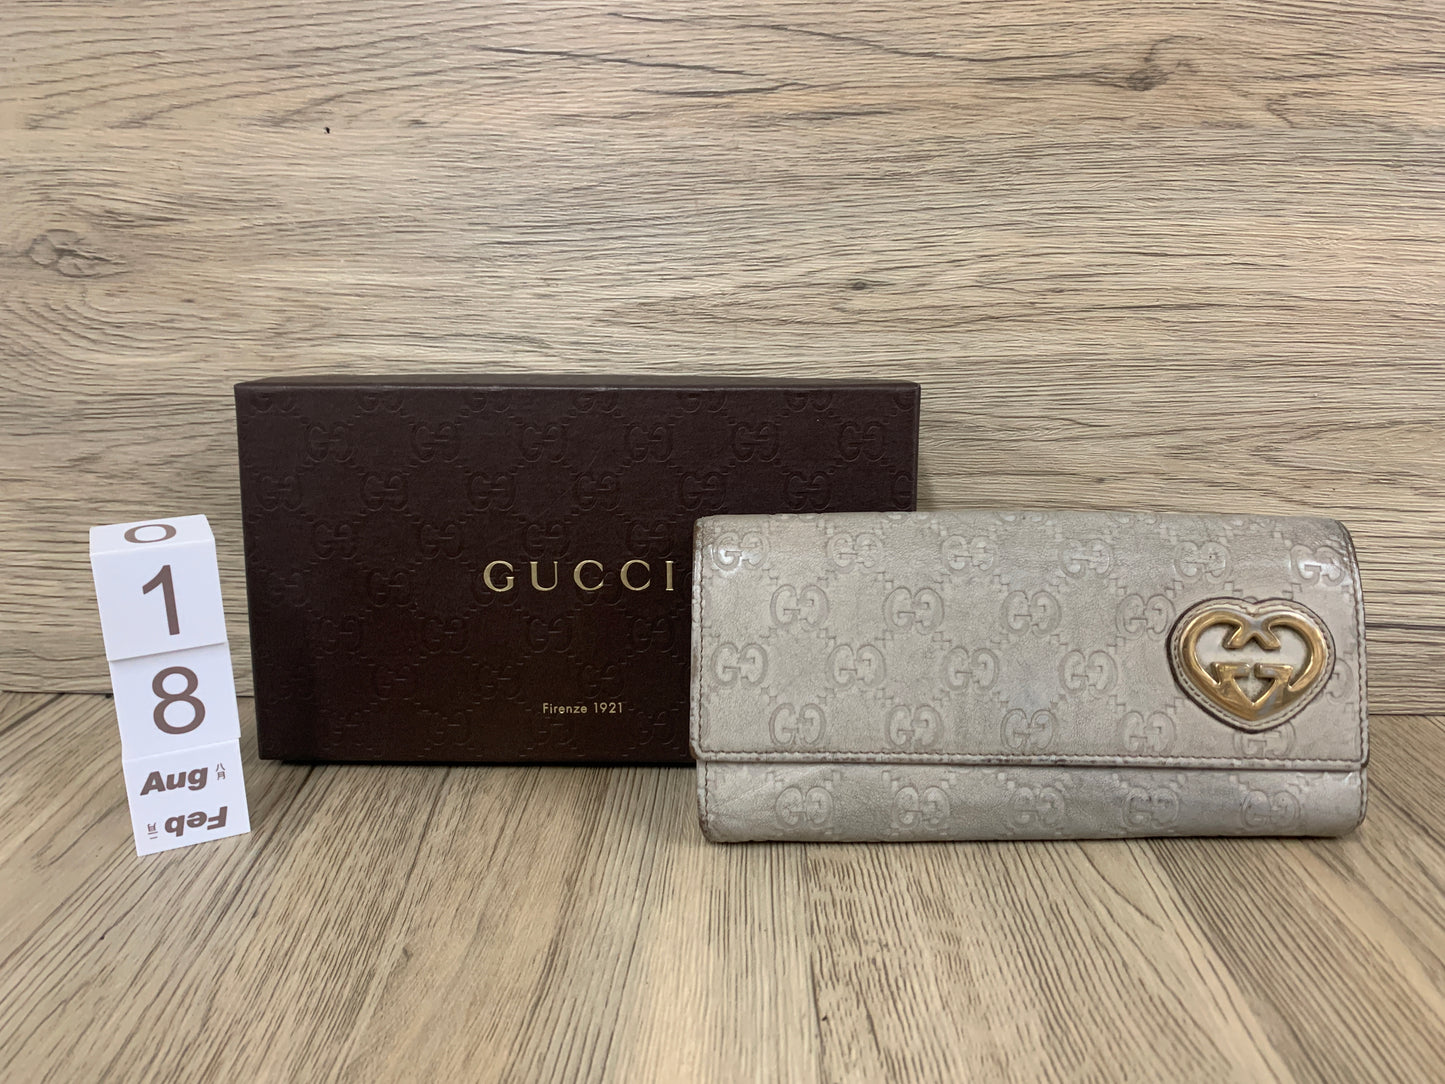 正品 Gucci 長款錢包配零錢袋 灰色 - 24AUG22